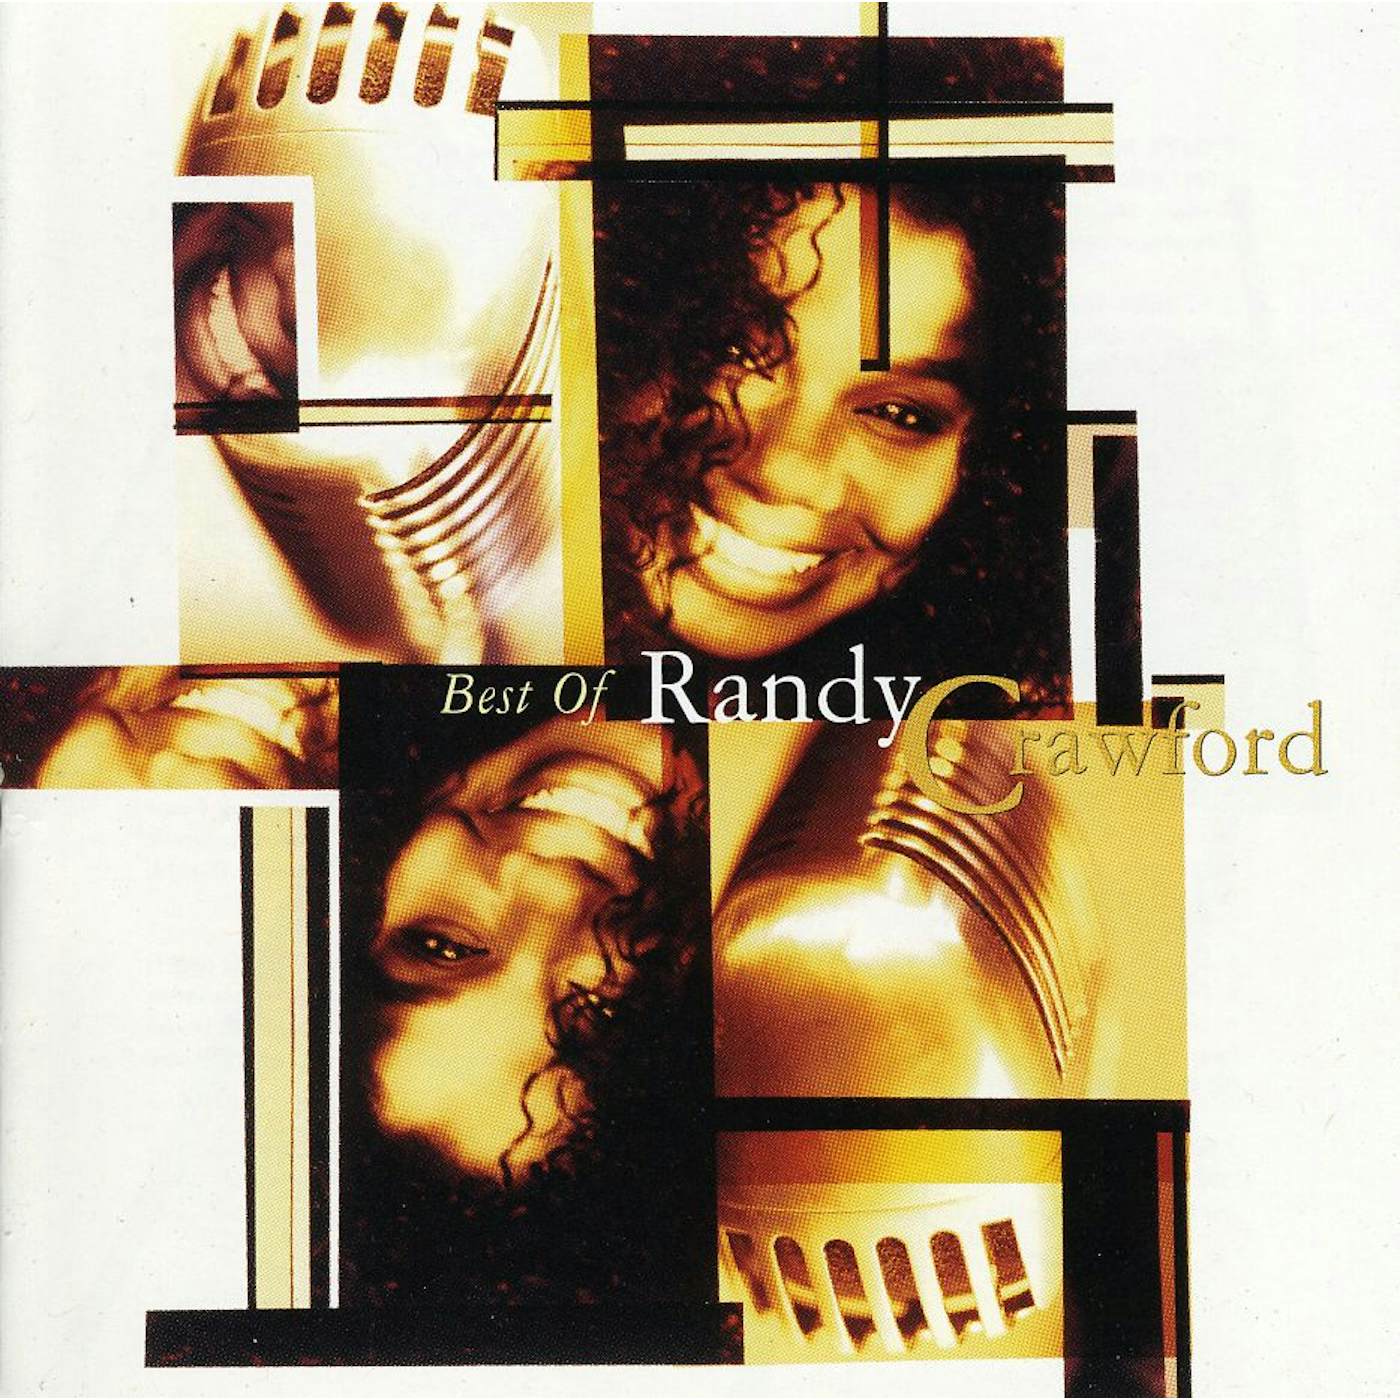 BEST OF RANDY CRAWFORD CD